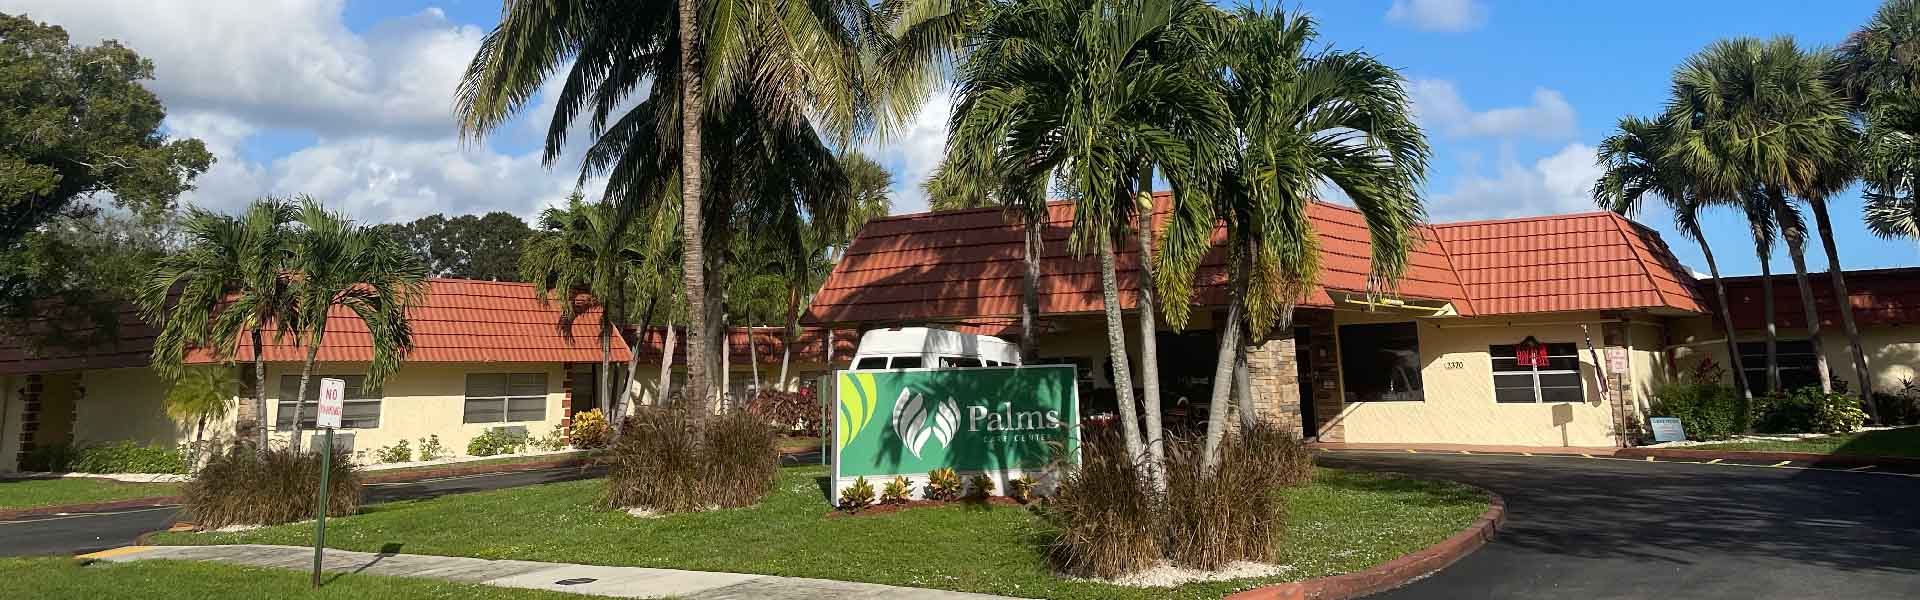 Palms building entrance